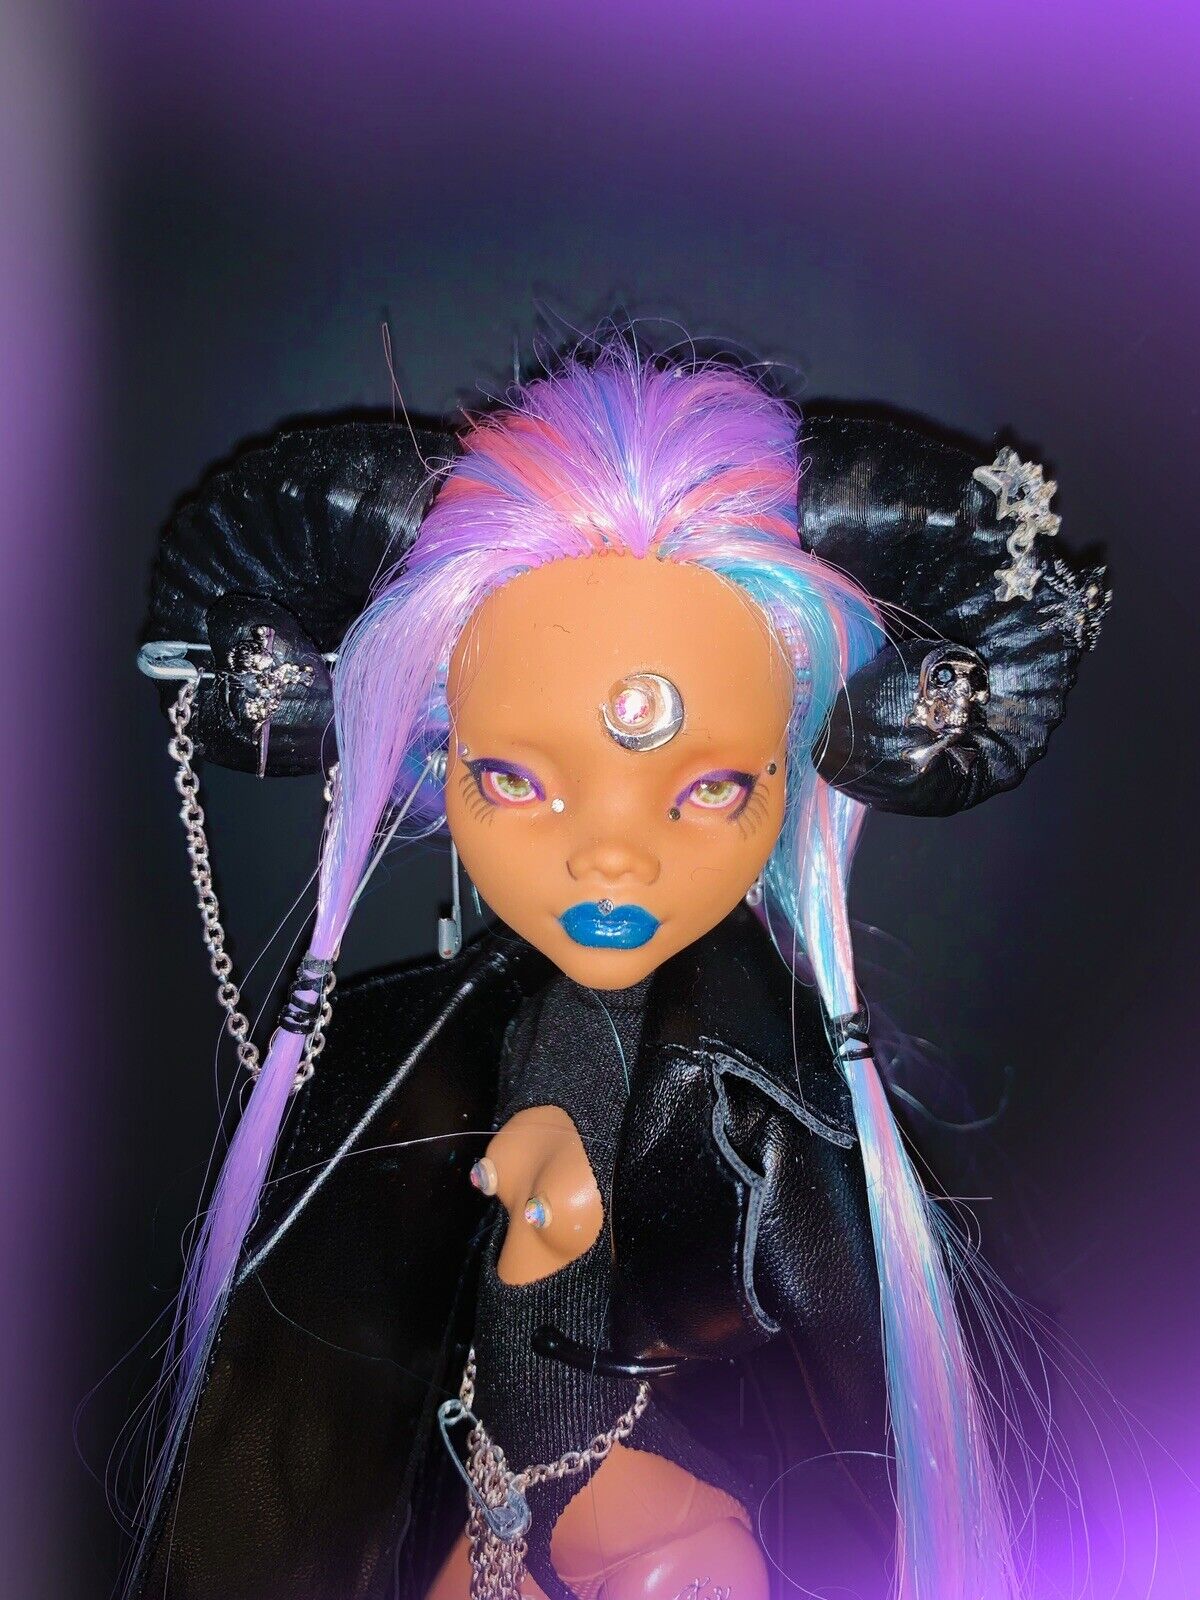 Monster High OOAK Custom Doll “Star”